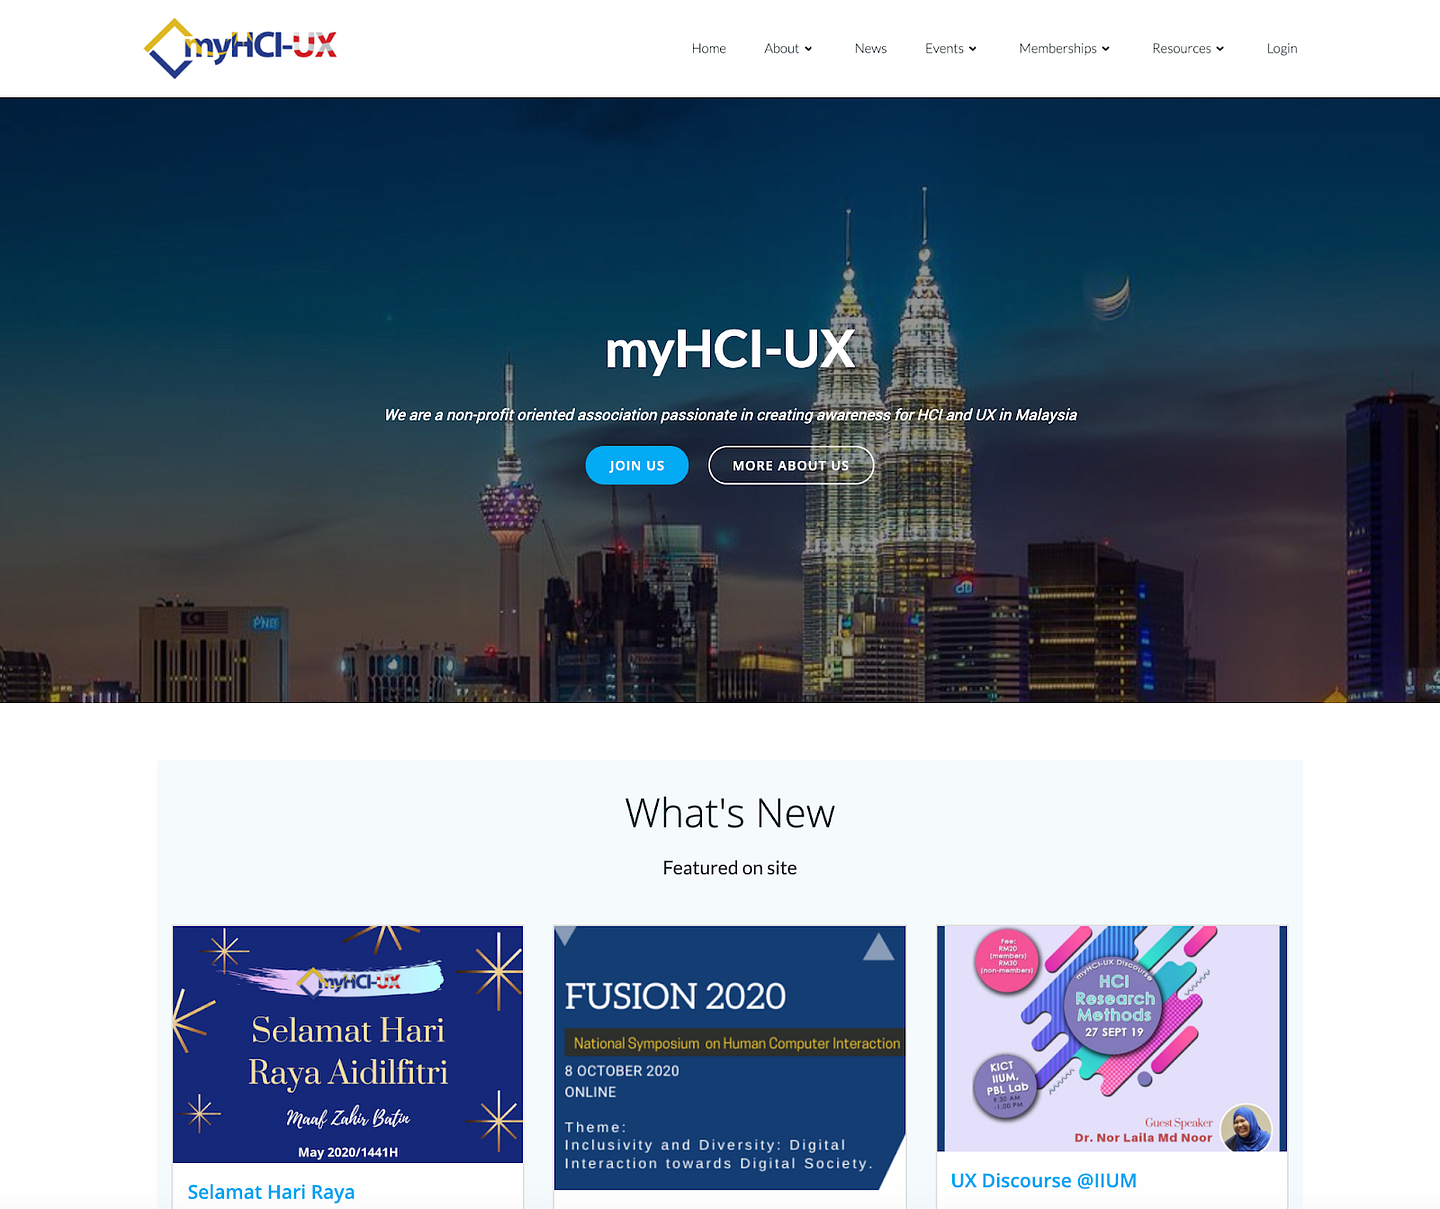 Kuala Lumpur ACM SIGCHI Chapter Website